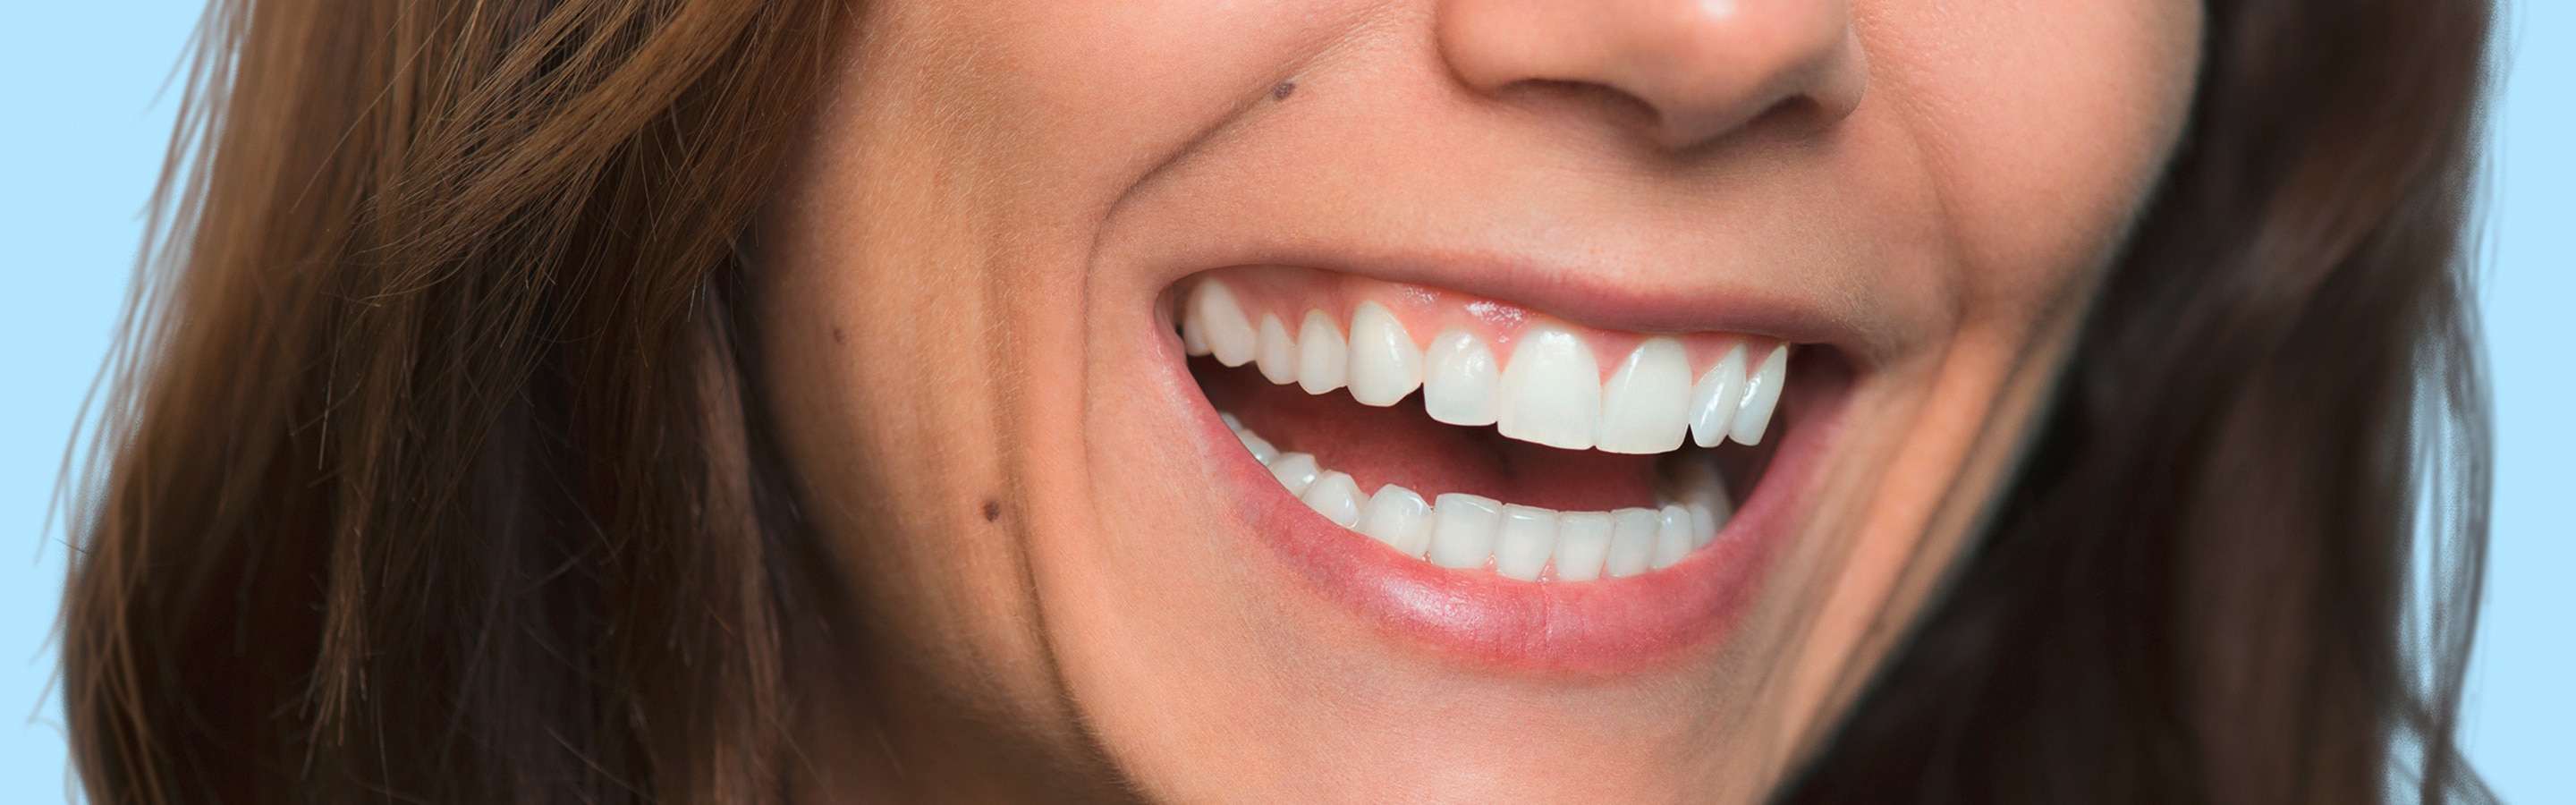 femme heureuse qui sourit avec belles dents blanches